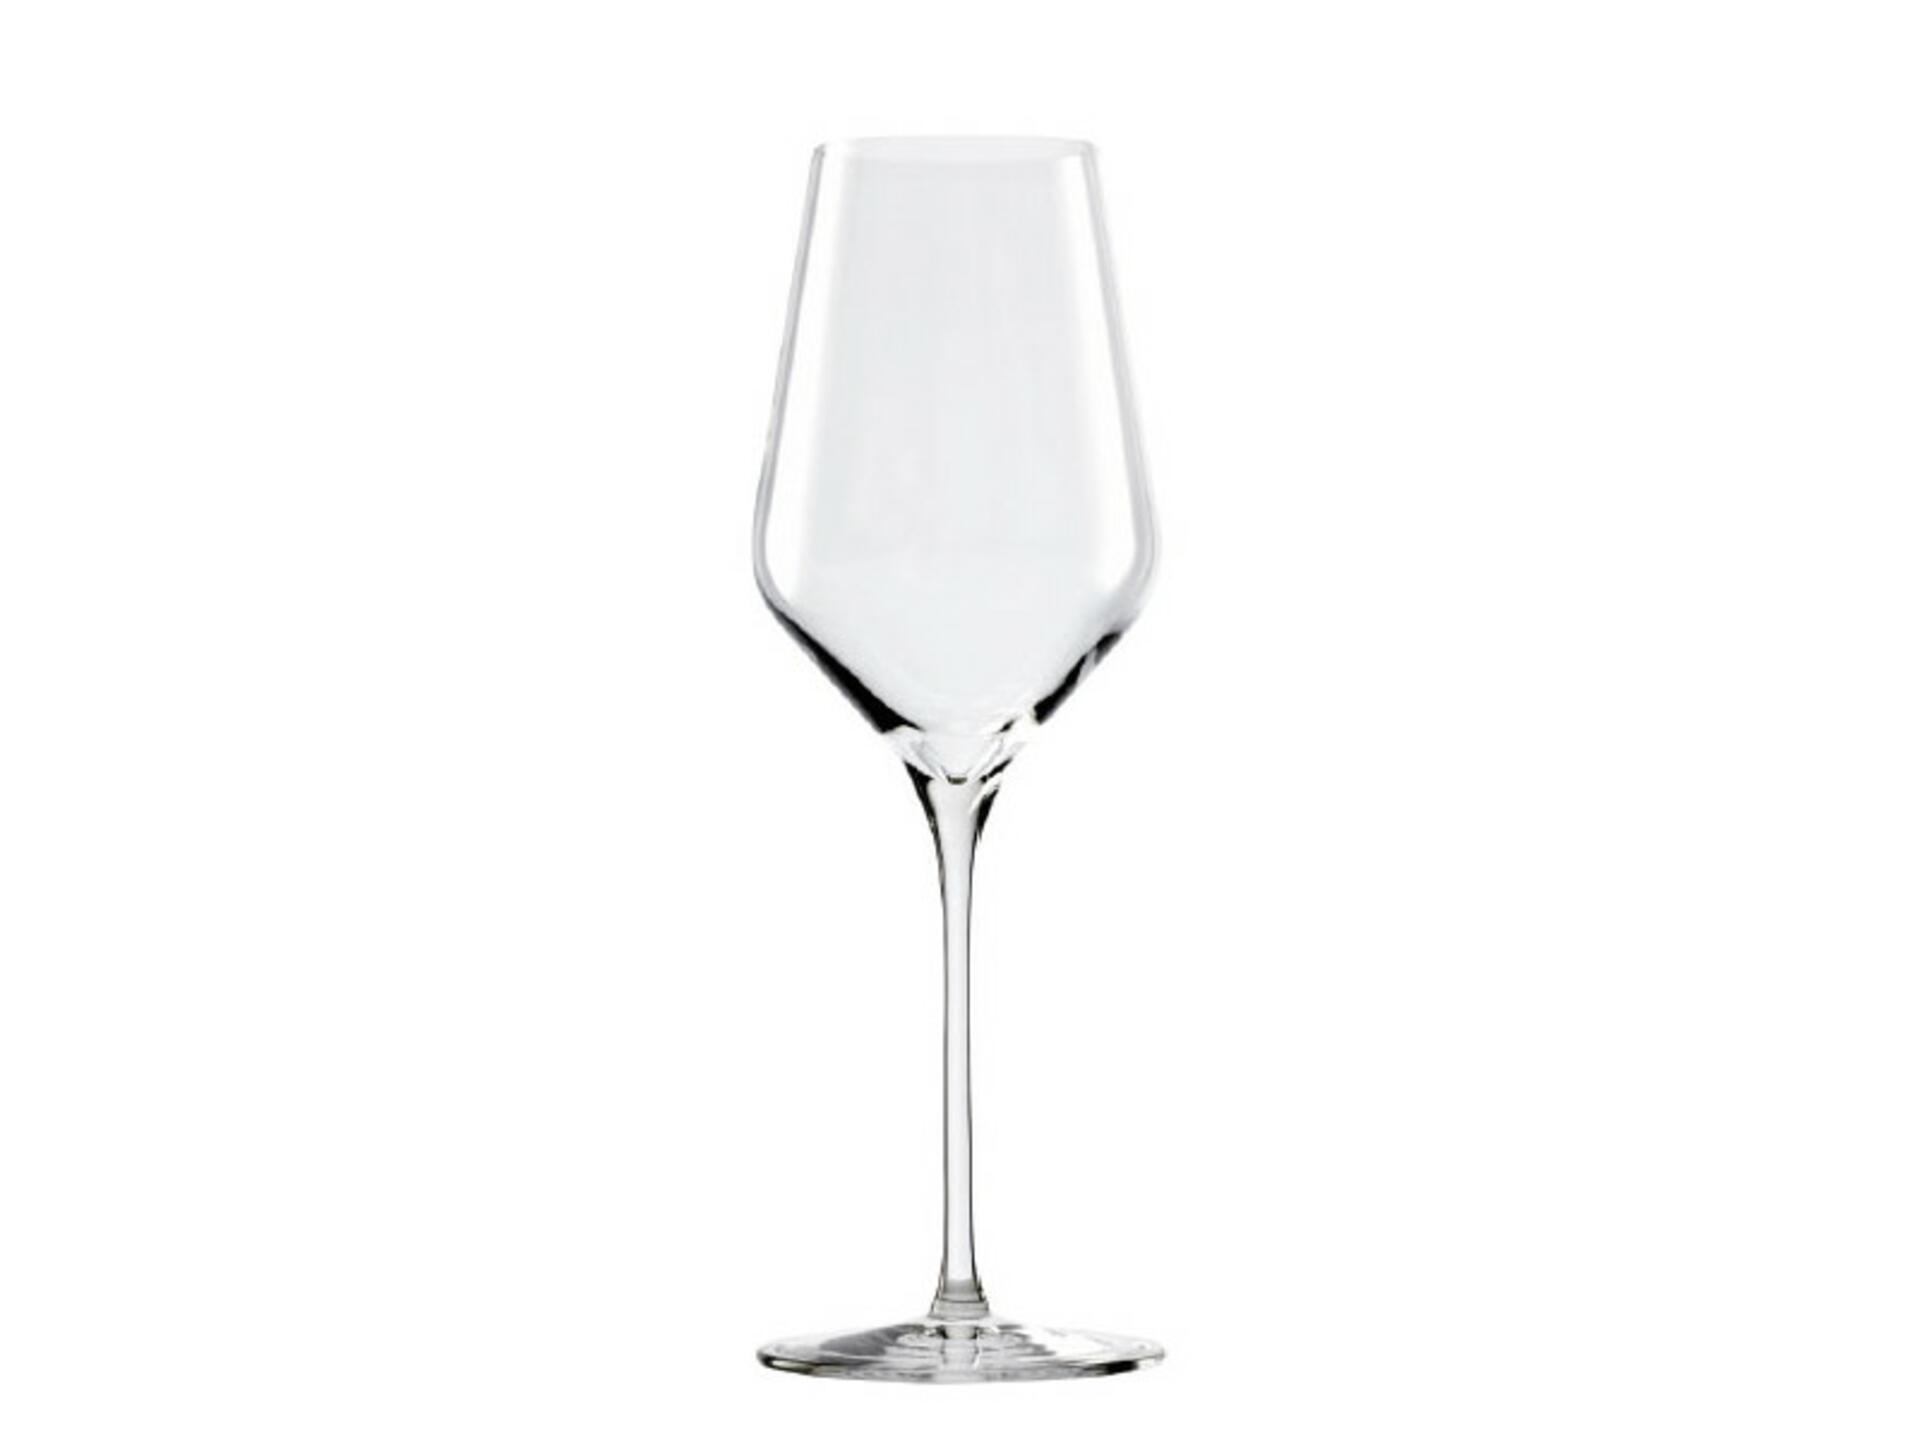 Bicchieri per vini bianchi leggeri - Quattrocalici